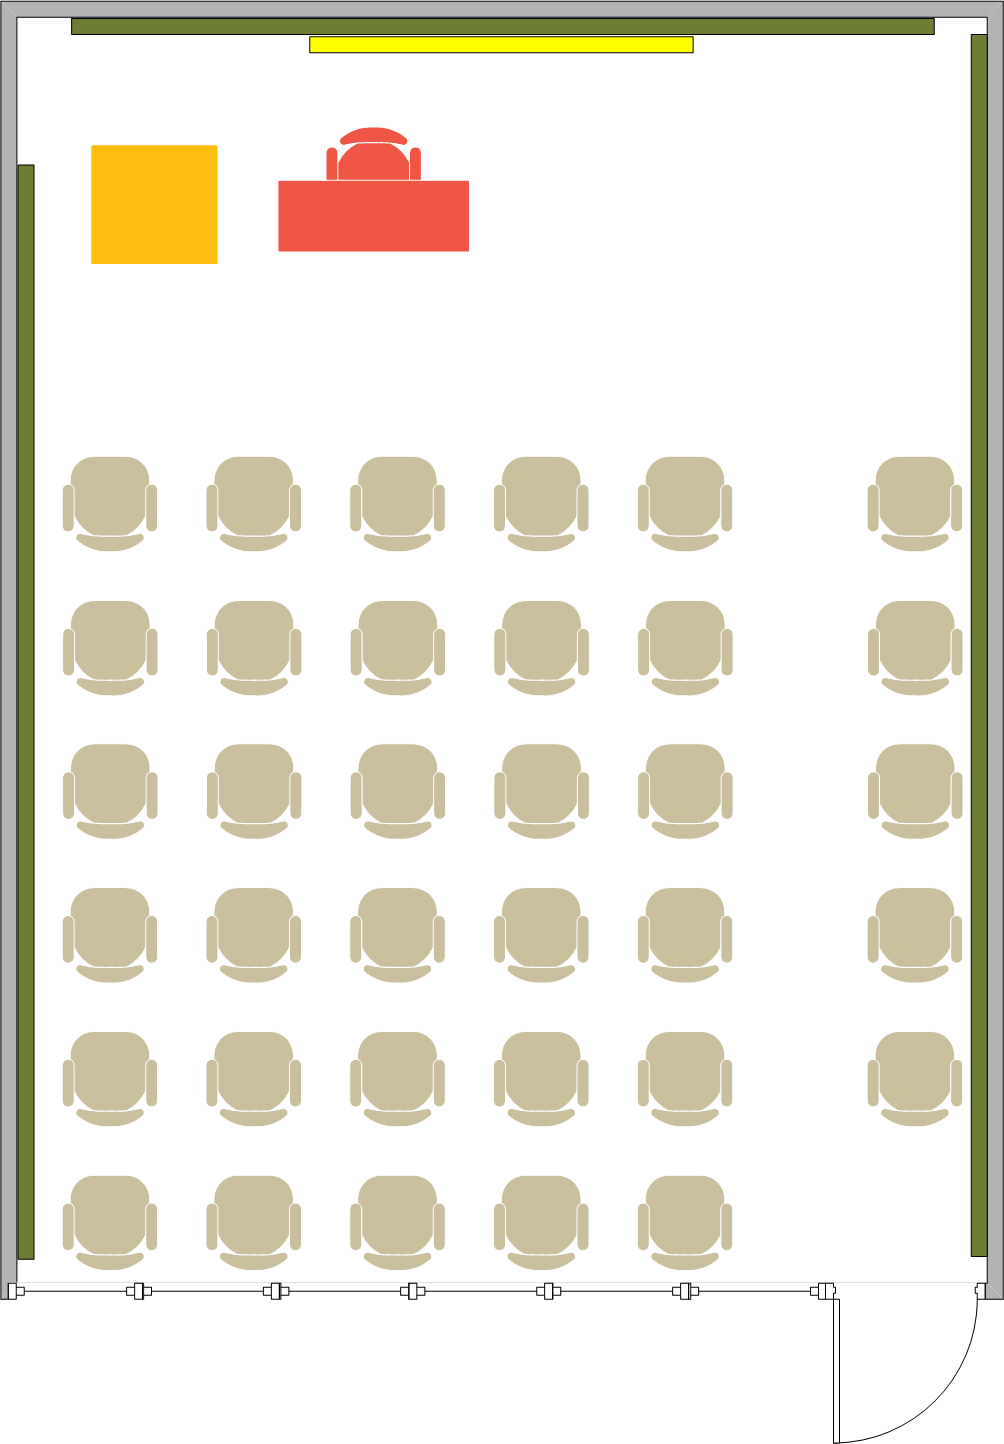 Phelps Hall - 1440 Seating Chart